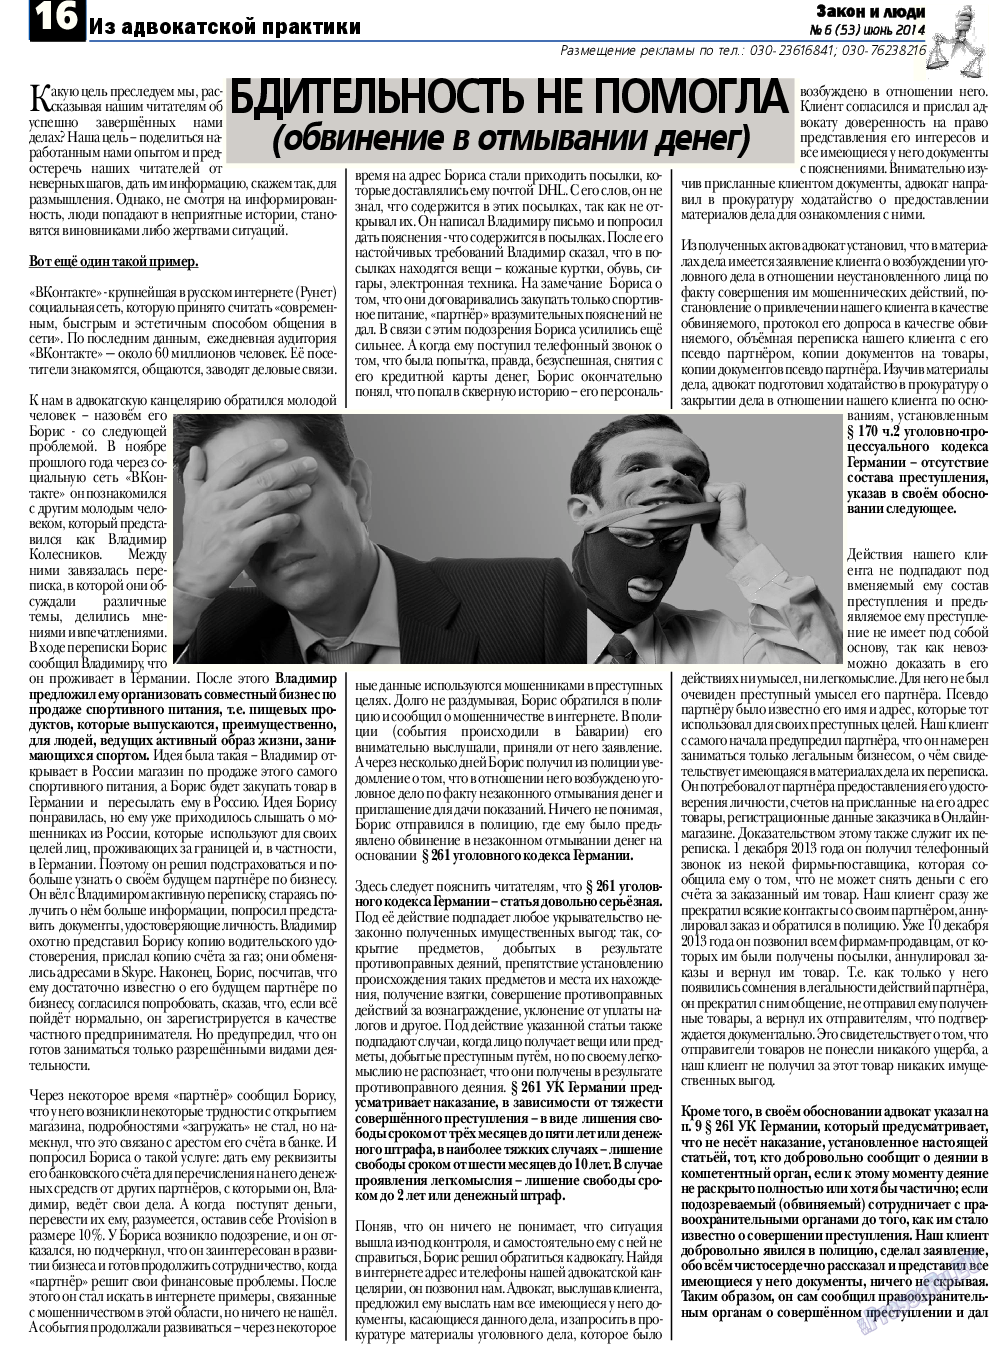 Закон и люди, газета. 2014 №6 стр.16